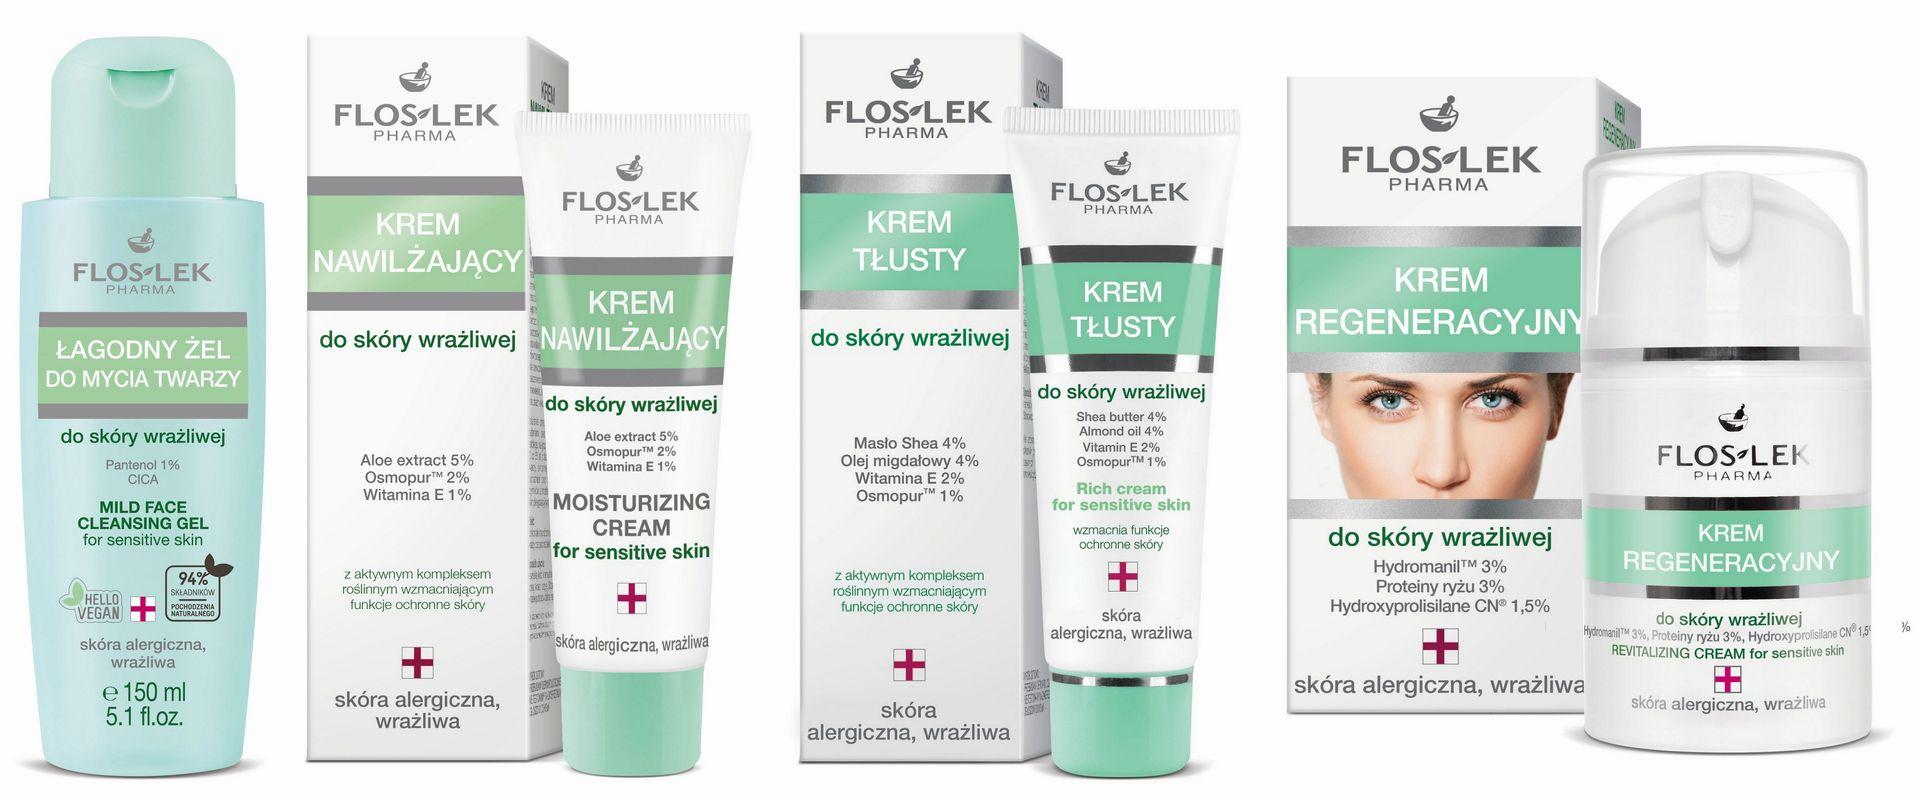 Floslek Pharma z linią kosmetyczną dla skóry wrażliwej